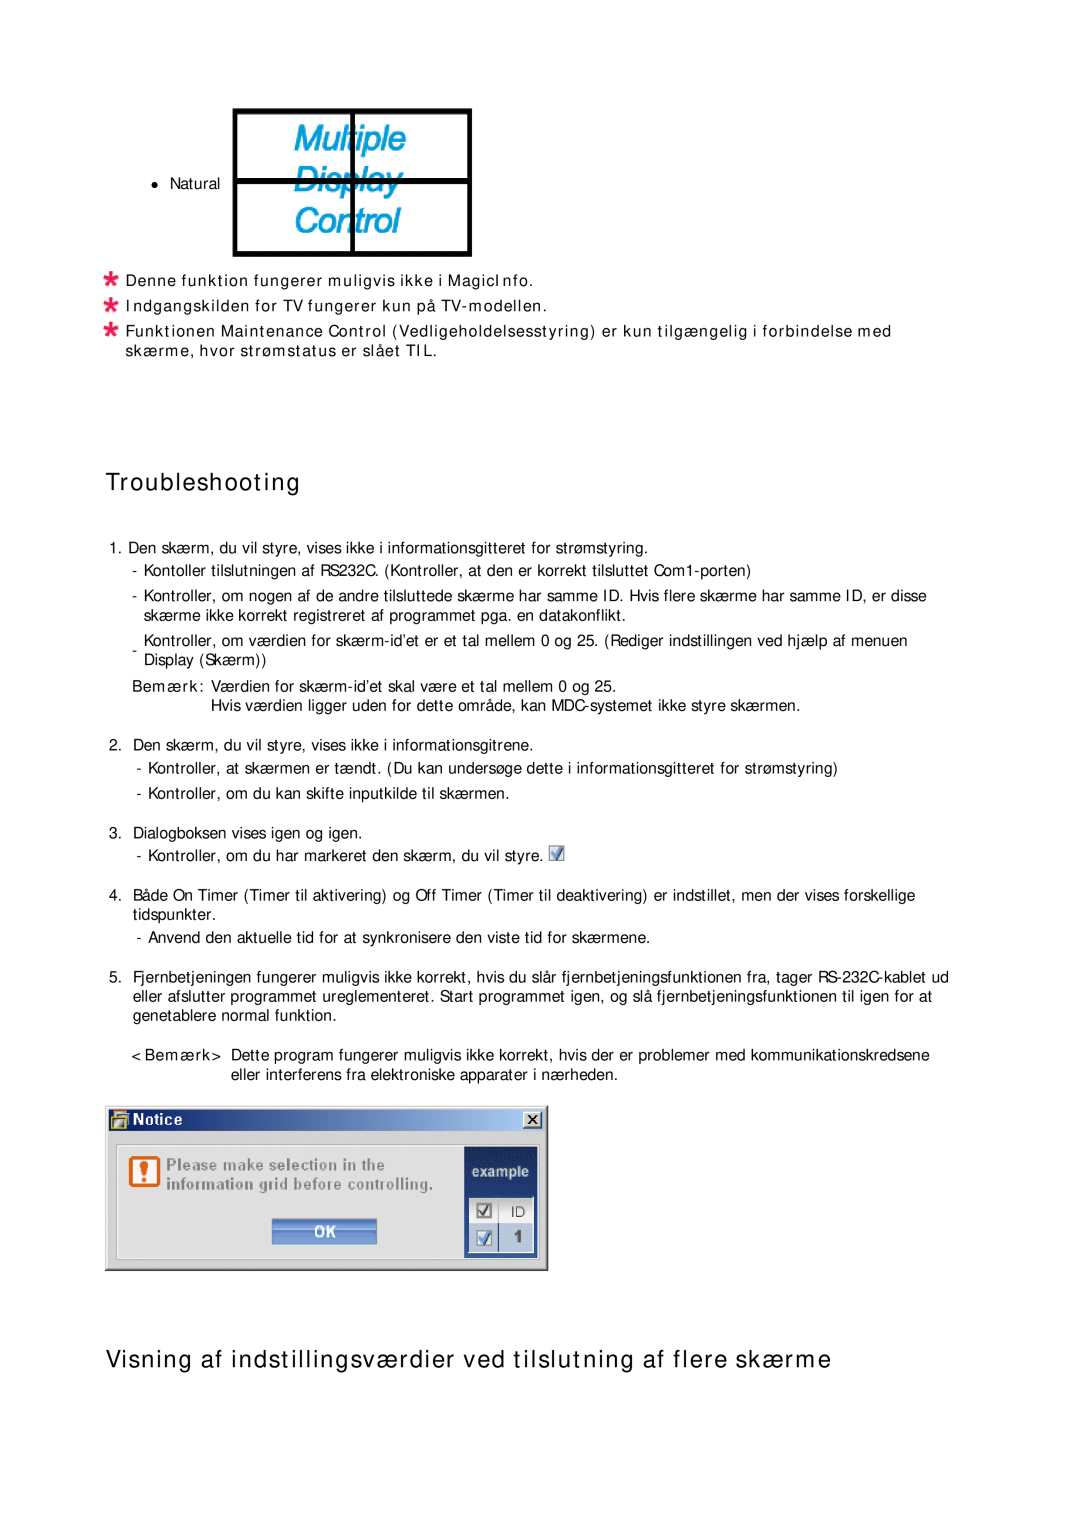 Samsung LH23PTRHBC/EN, LH23PTSMBC/EN manual Troubleshooting, Visning af indstillingsværdier ved tilslutning af flere skærme 